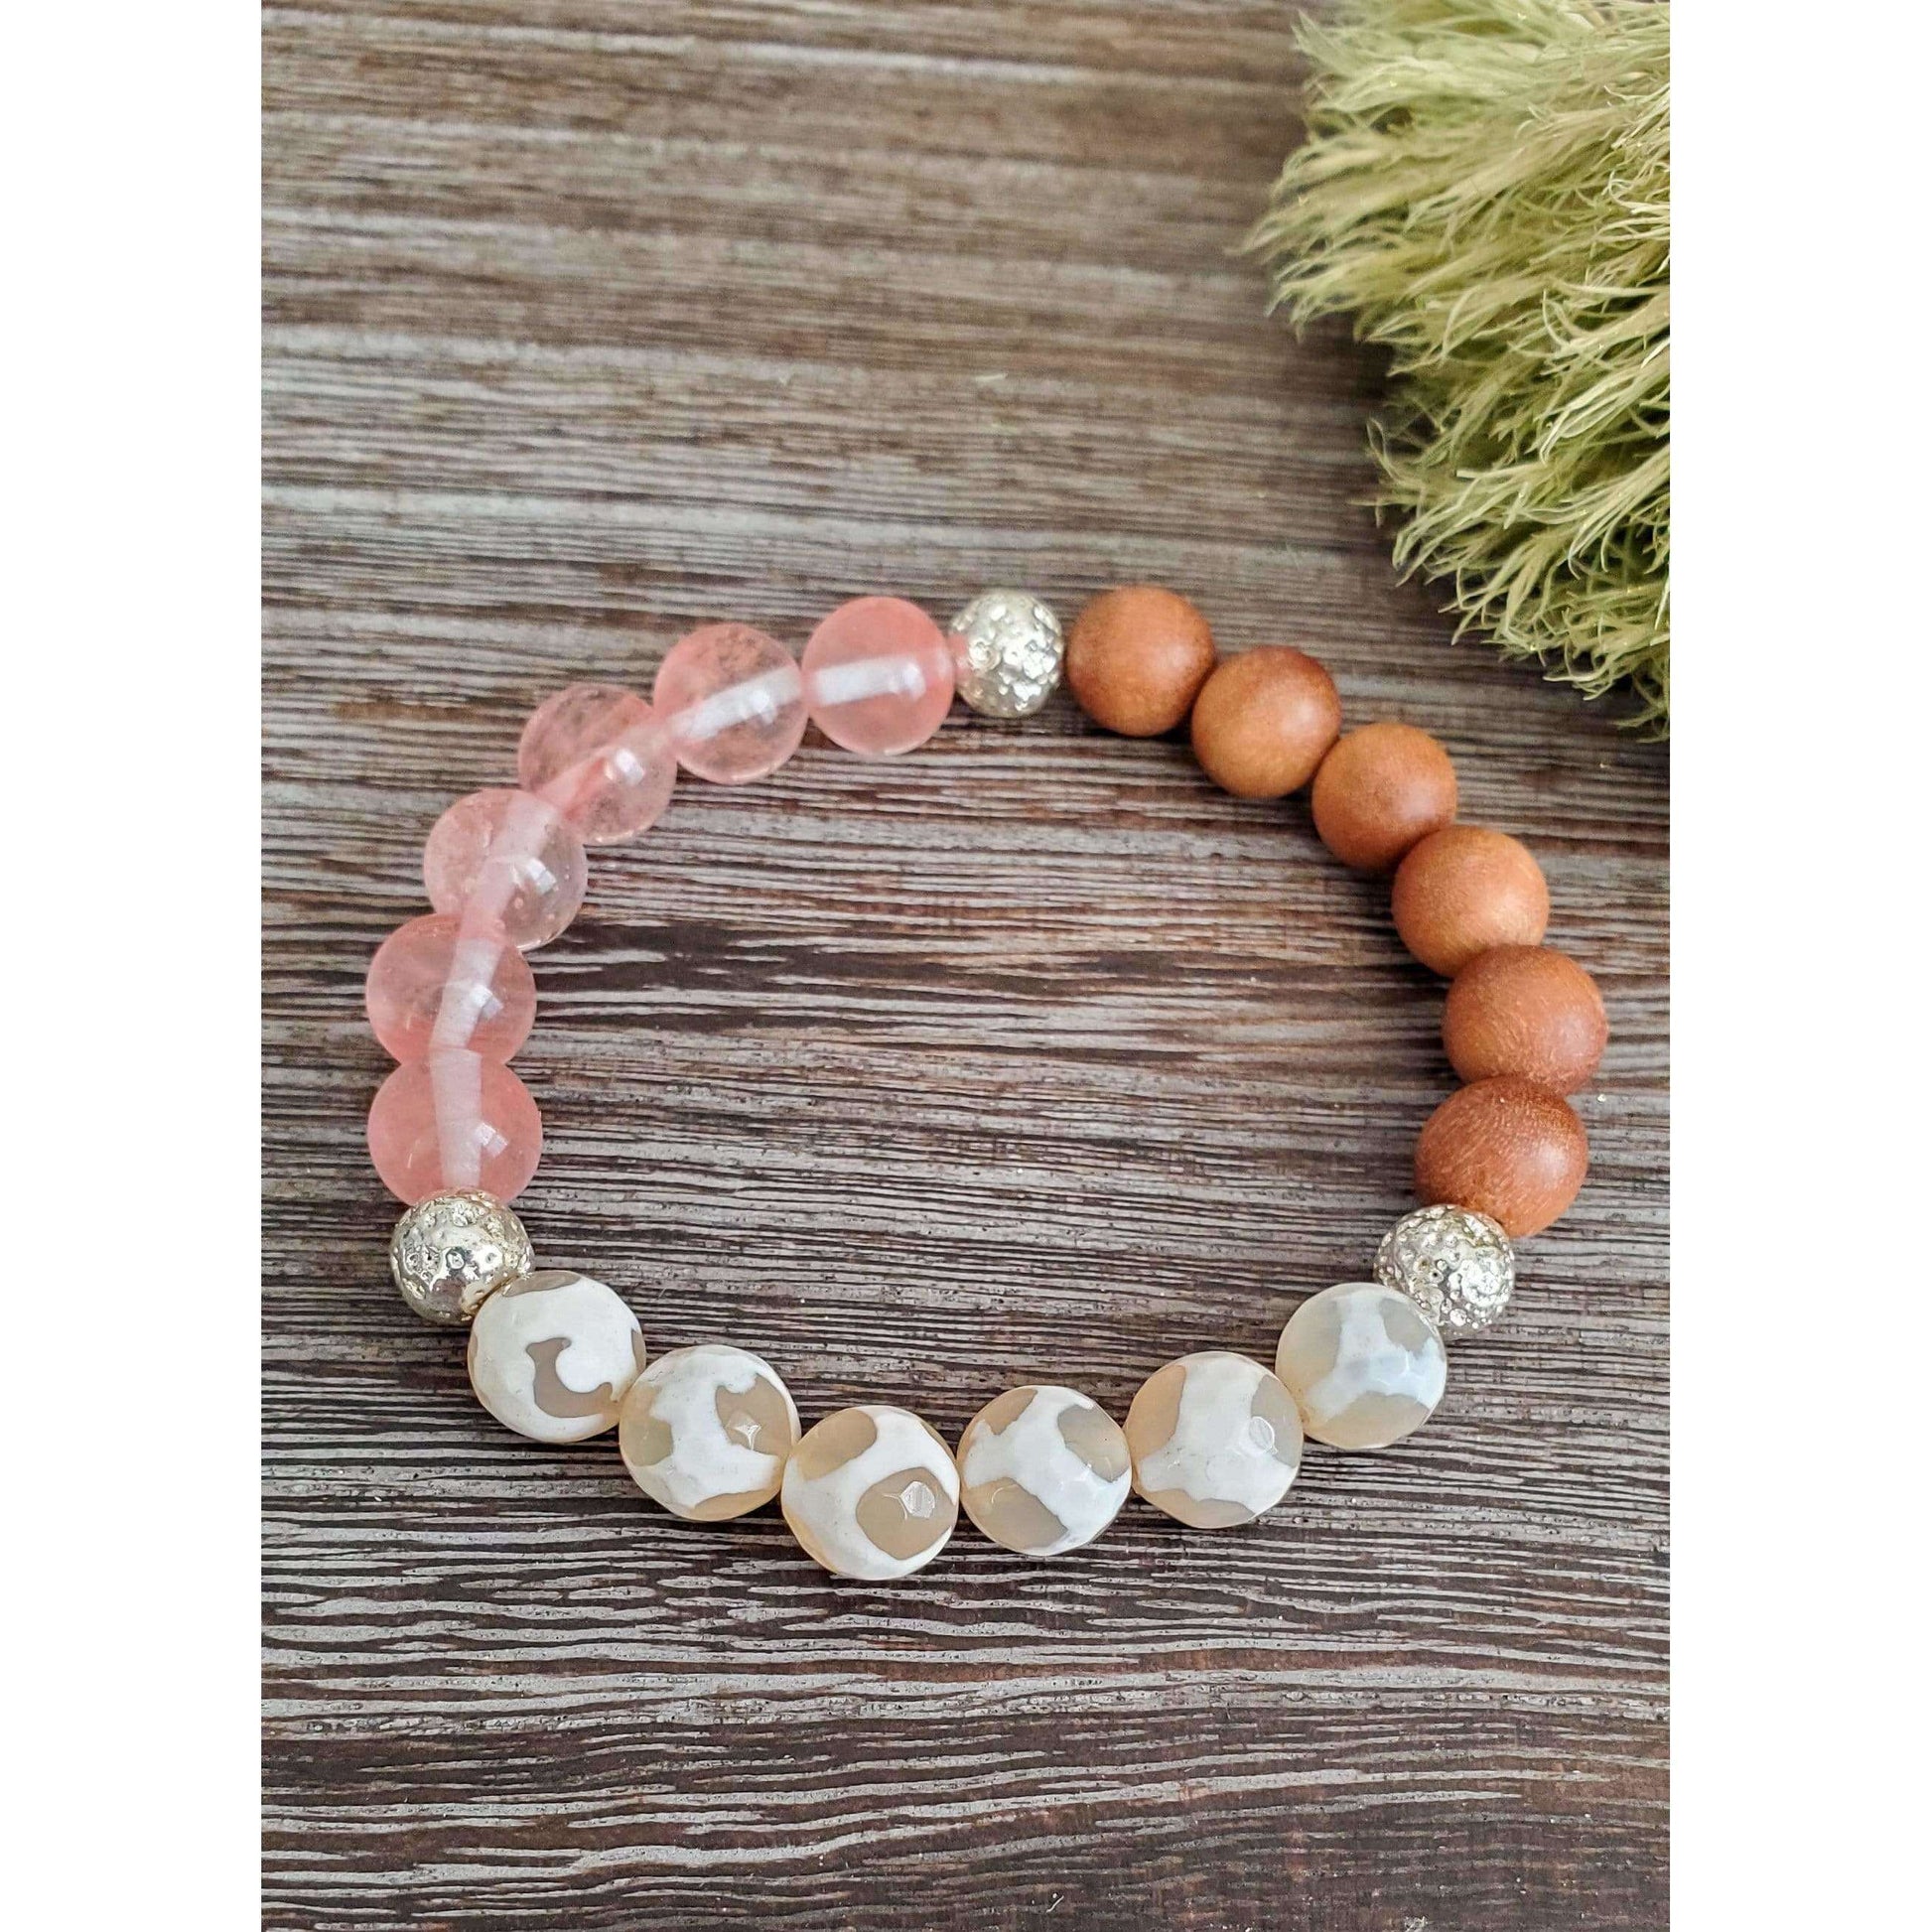 Assorted Stone and Wood Bracelet - Nicki Lynn Jewelry